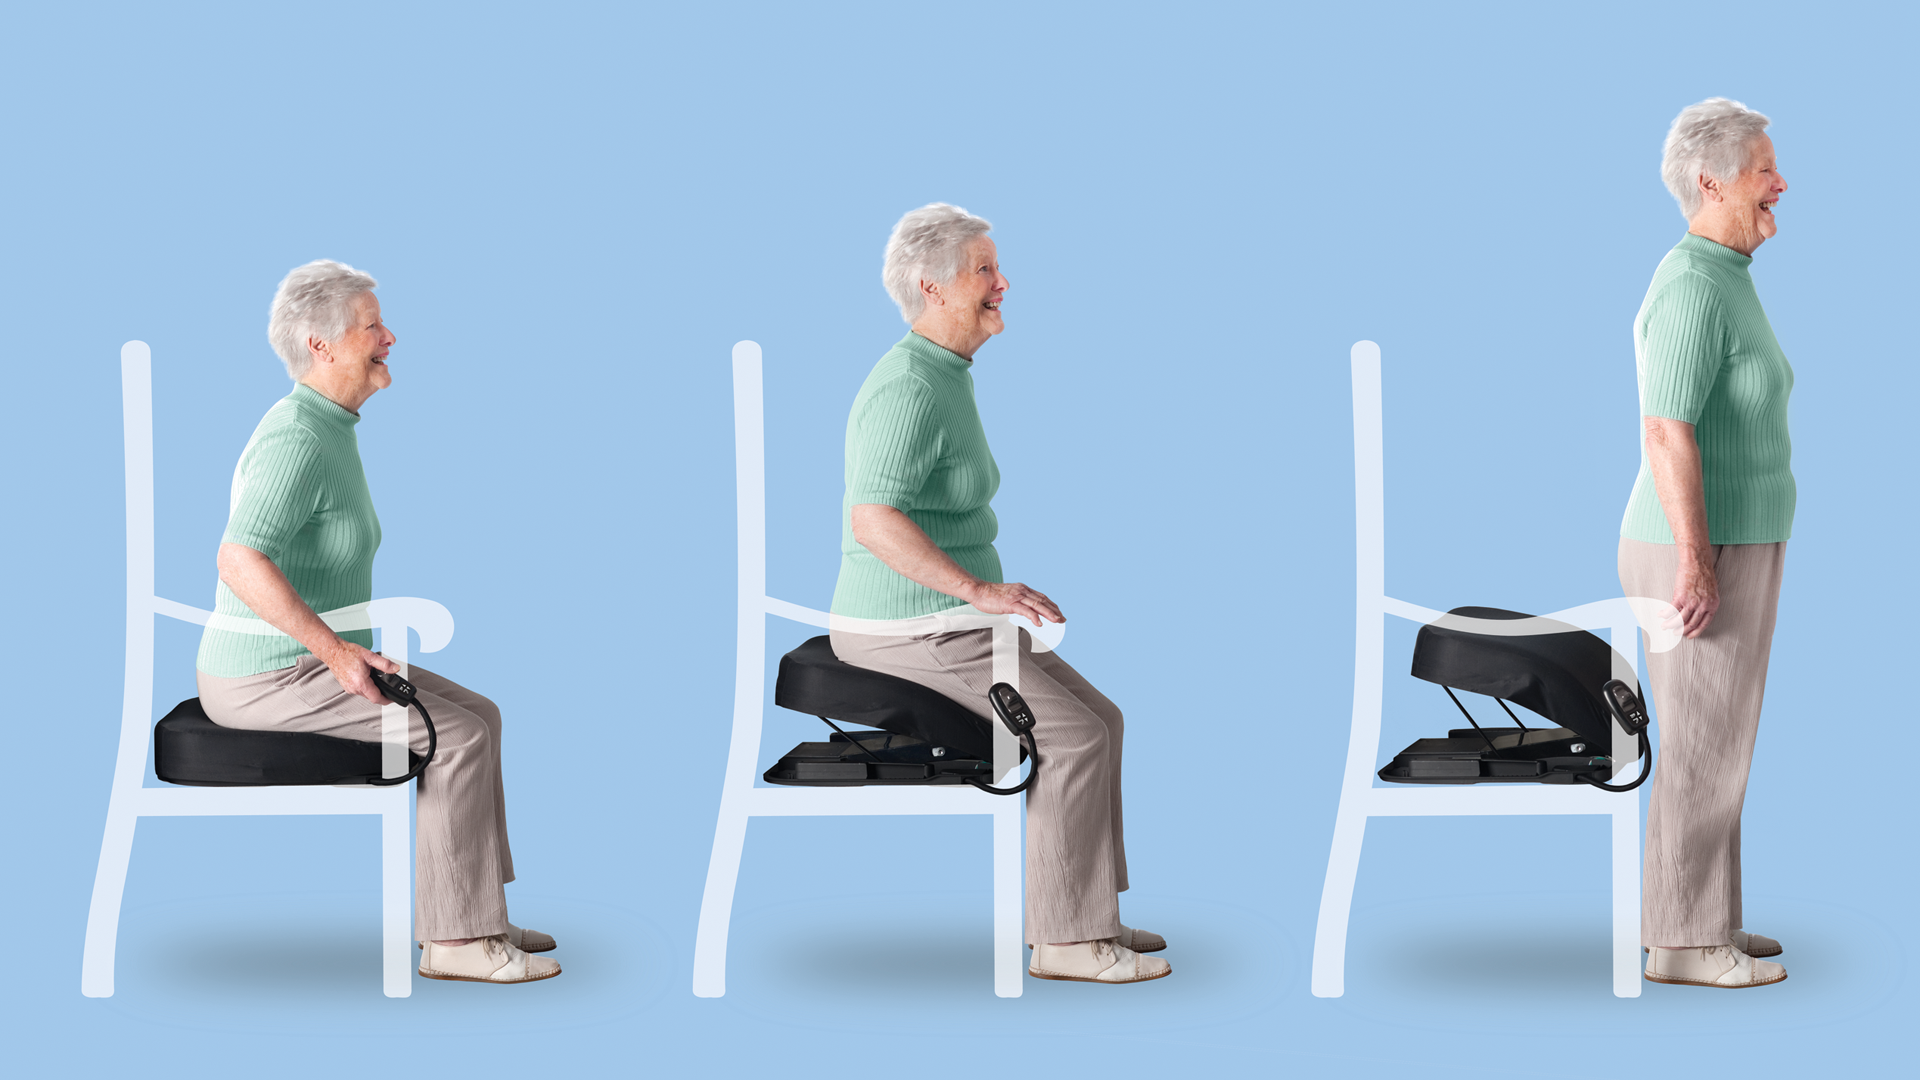 Die Fotokollage zeigt einen Stuhl mit elektrischem Katapultsitz in drei unterschiedlichen Aufstehpositionen einer älteren Frau.